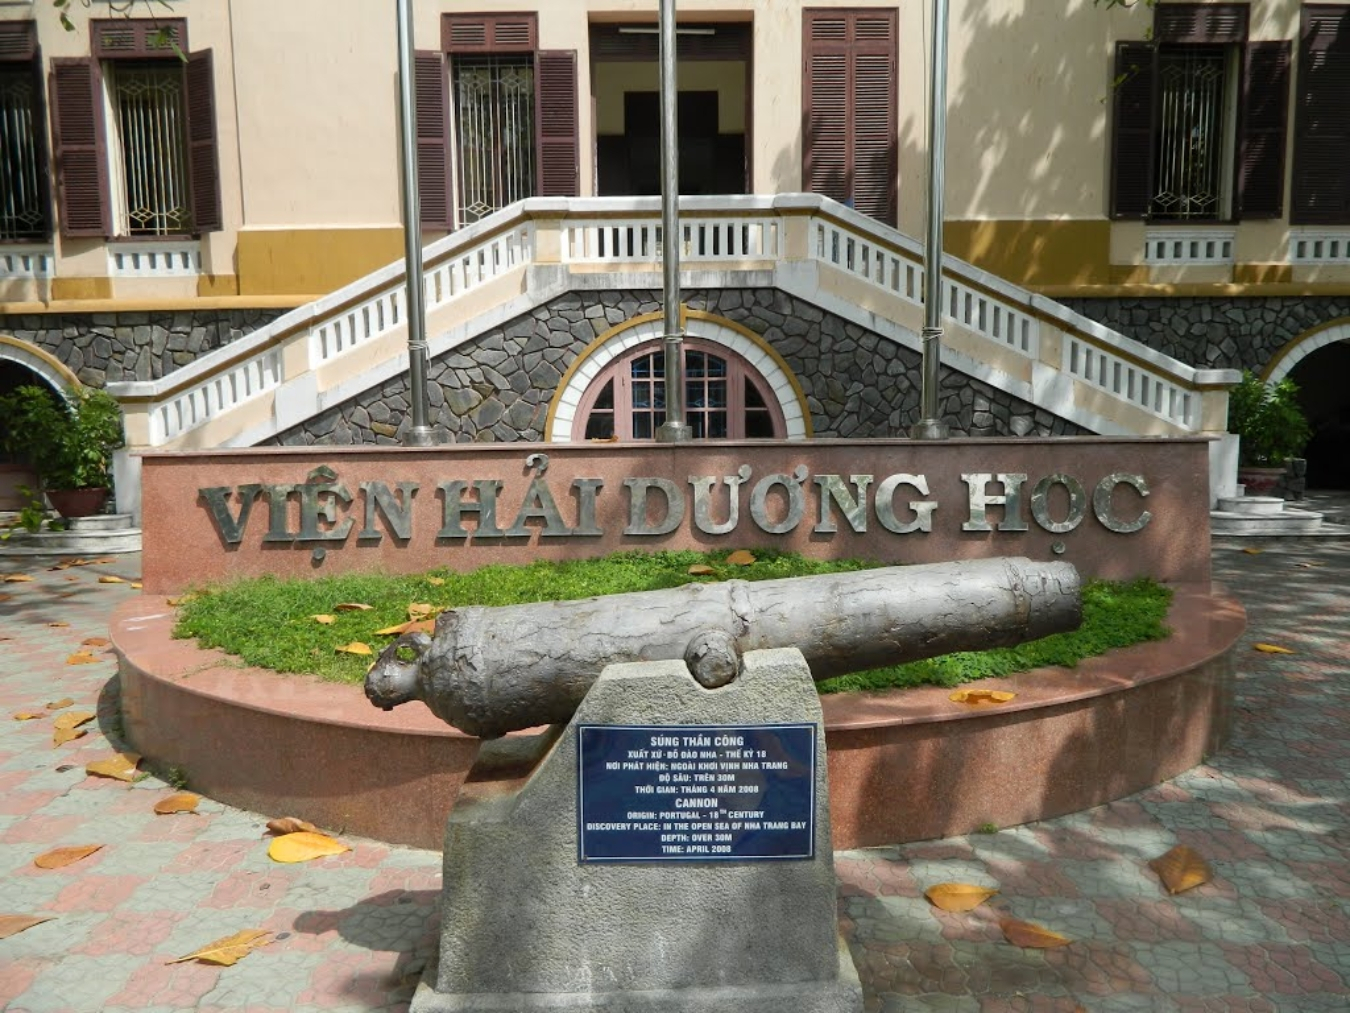 Viện Hải Dương Học Nha Trang có địa chỉ ở số 1, Cầu Đá, Nha Trang, Khánh Hòa